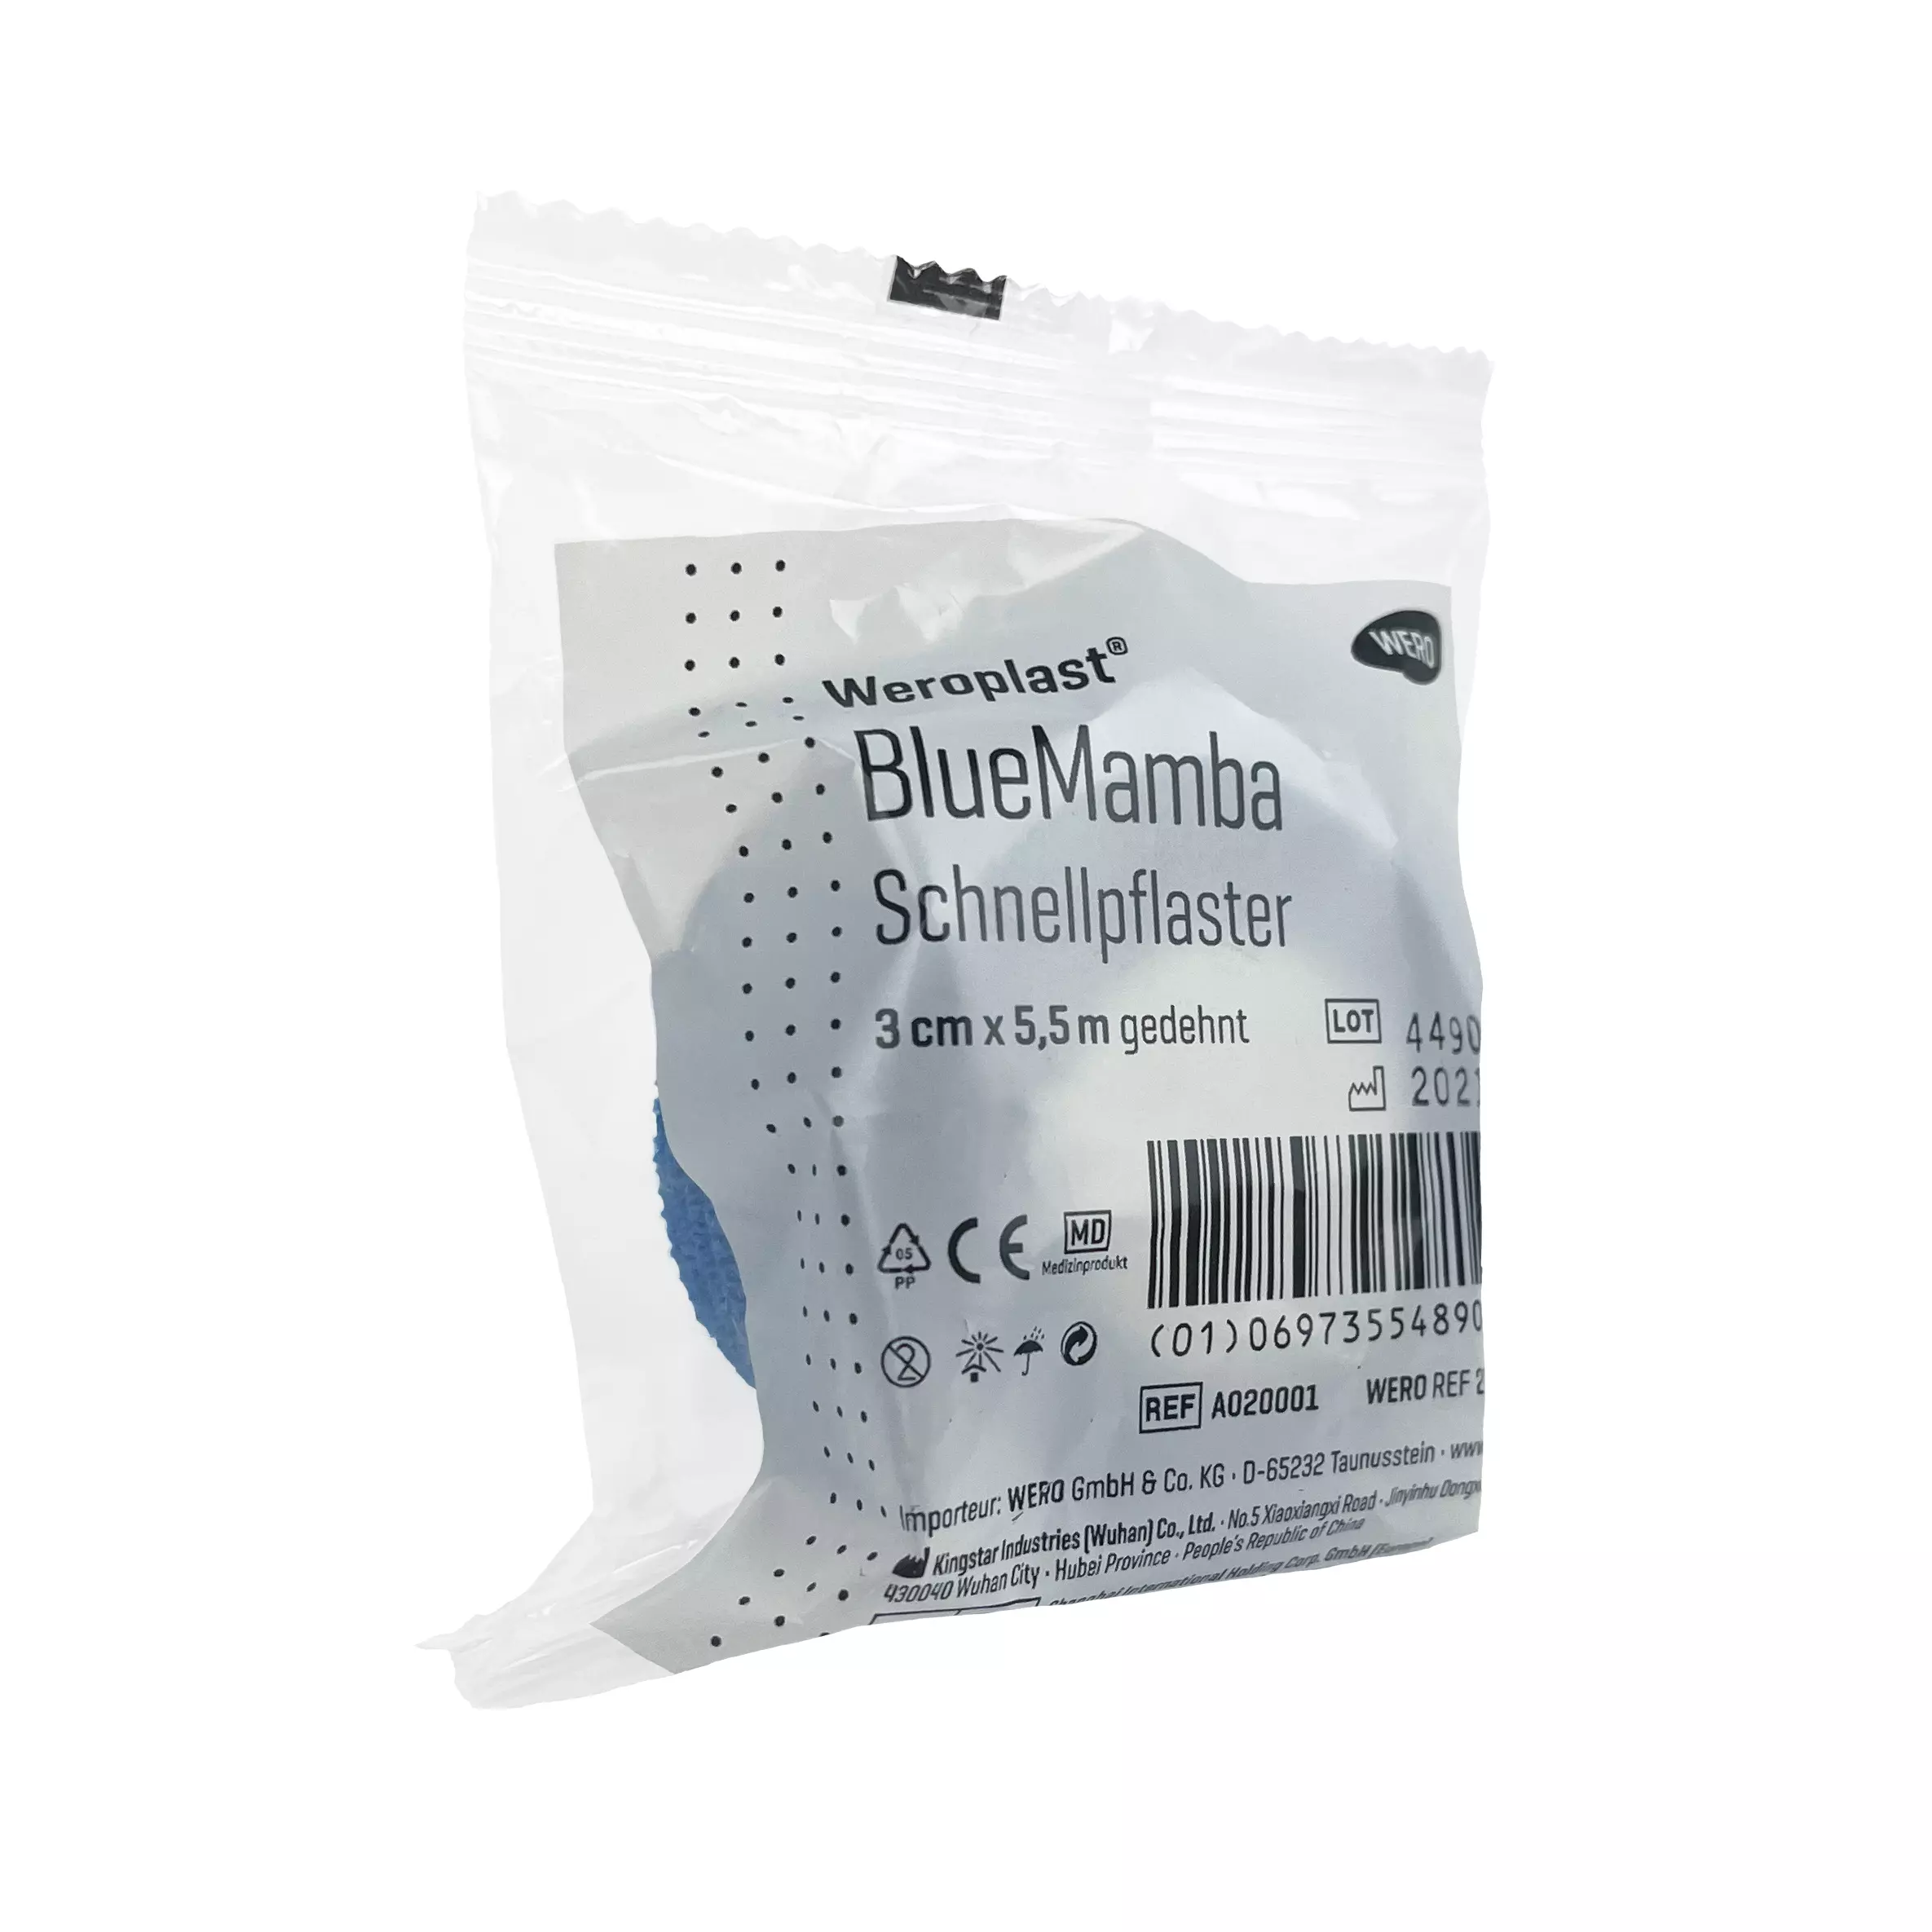 Schnellpflaster Weroplast® BlueMamba - 1 Stk